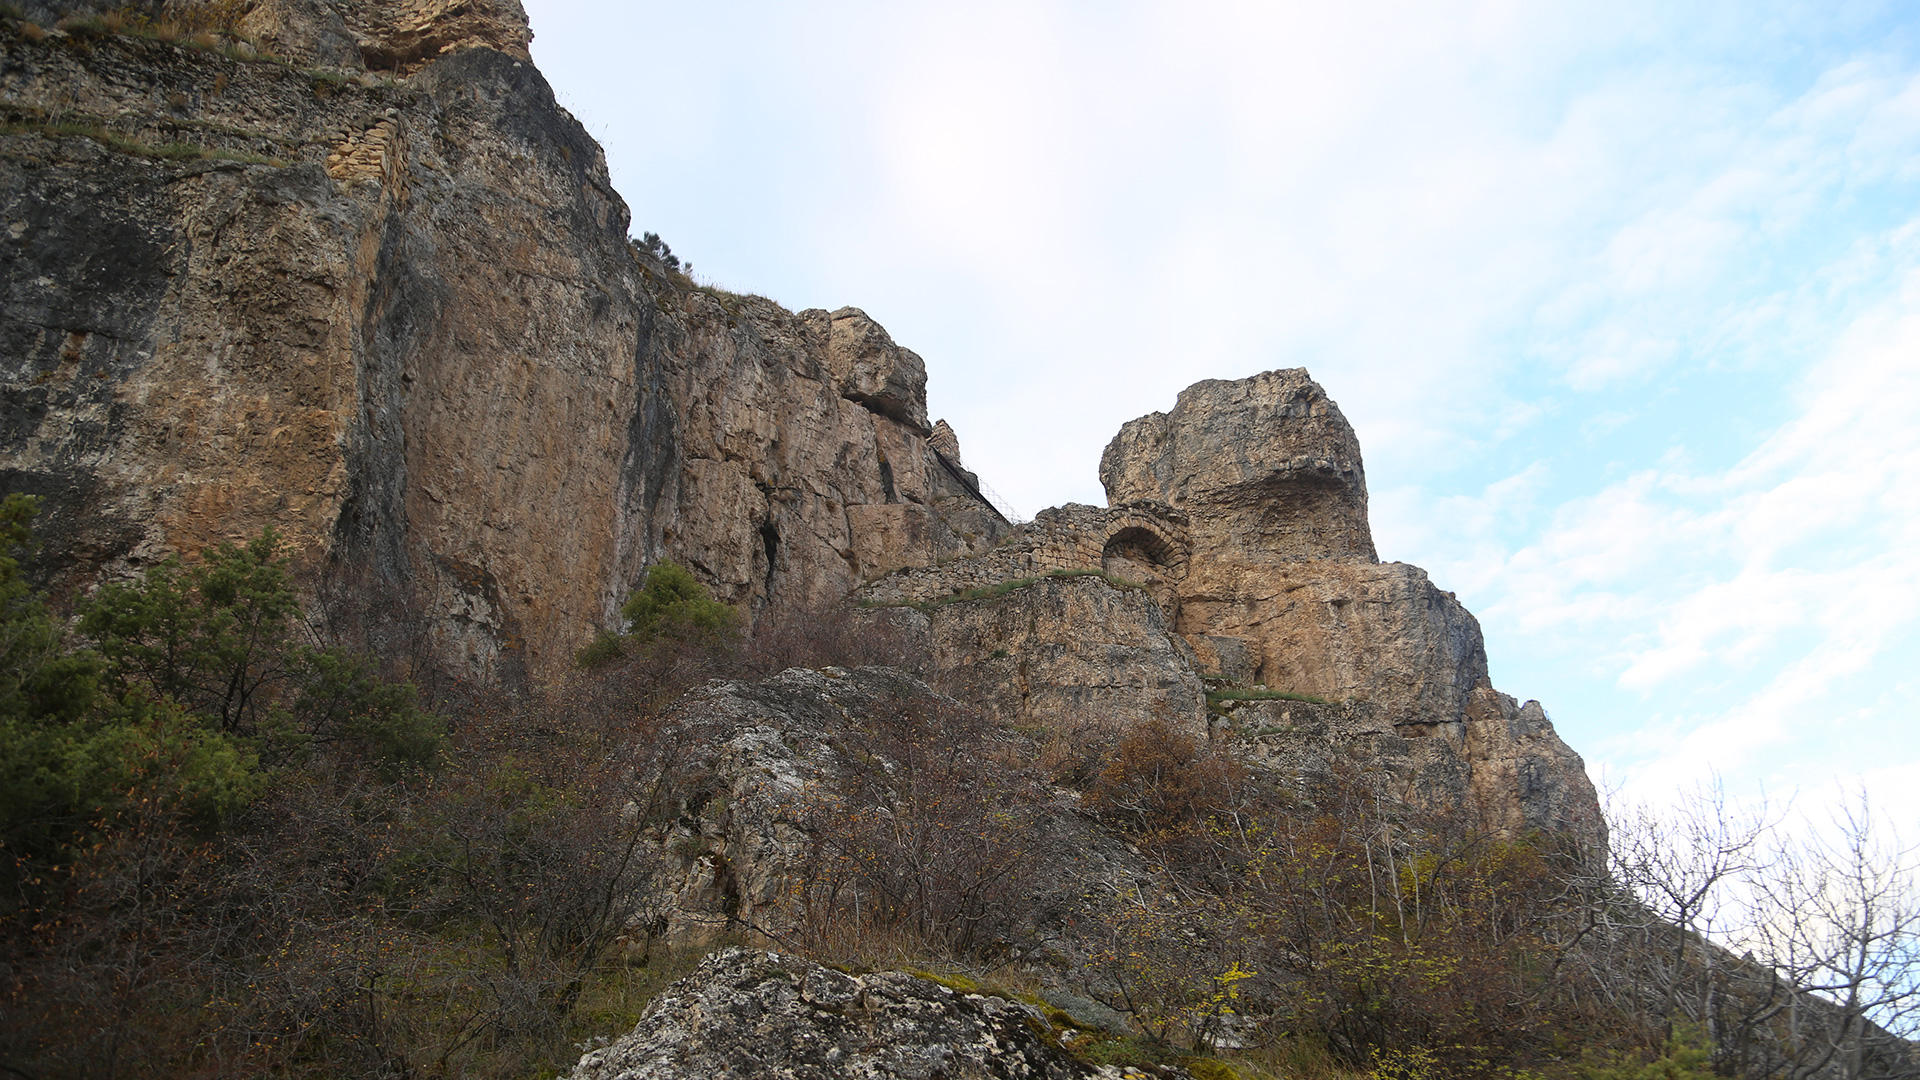 Ardanuç (Gevhernik) Castle